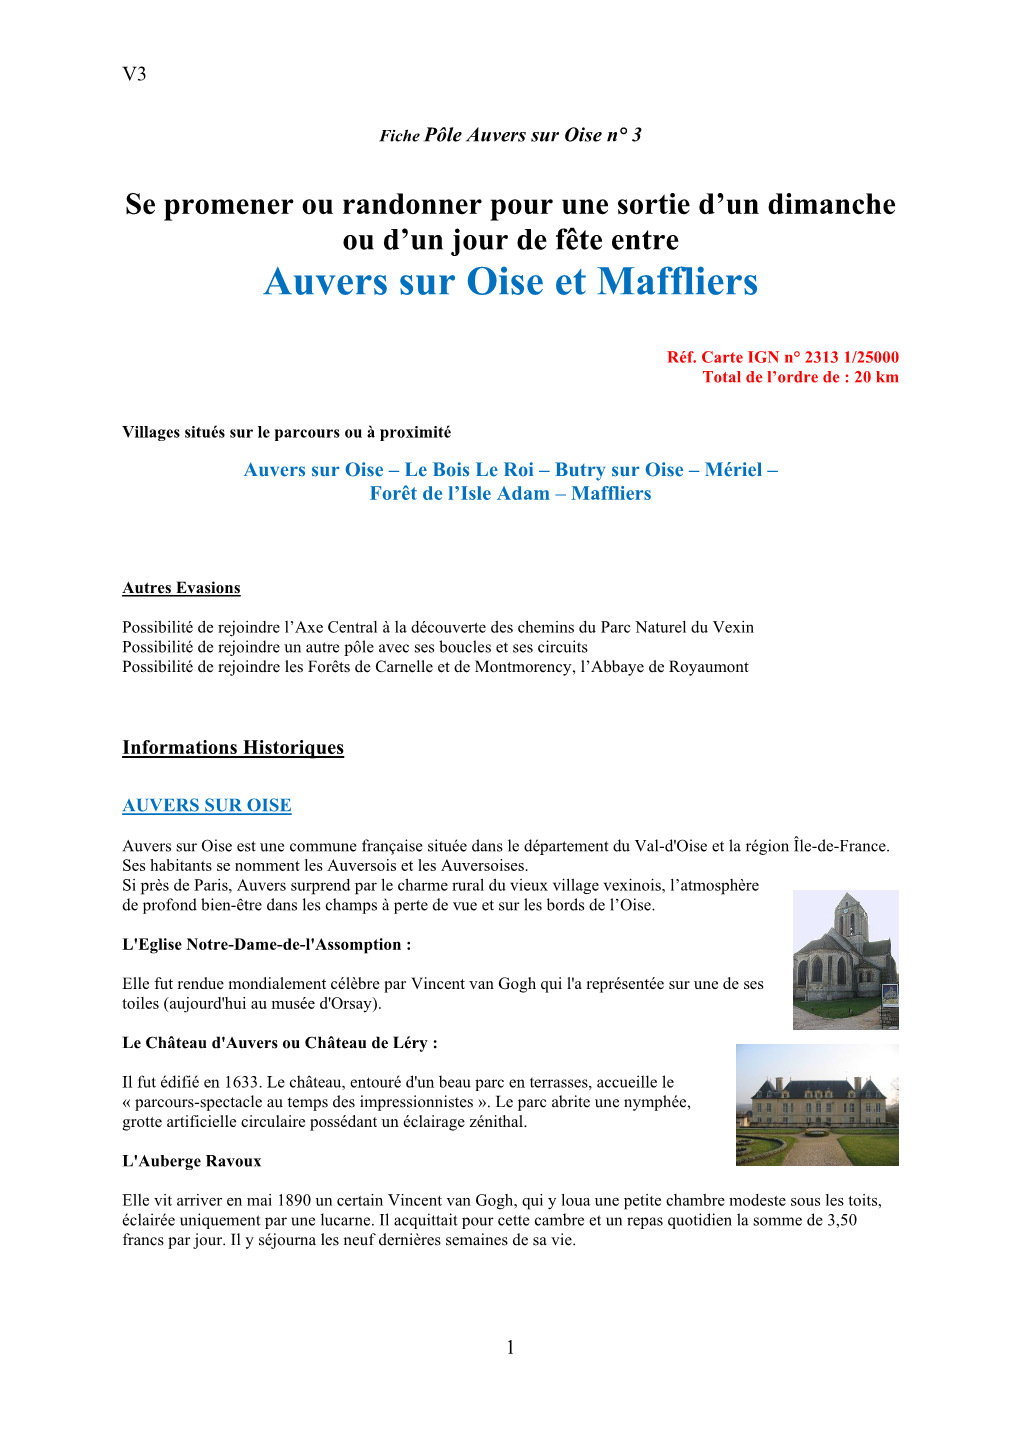 Circuit Auvers Sur Oise [Maffliers